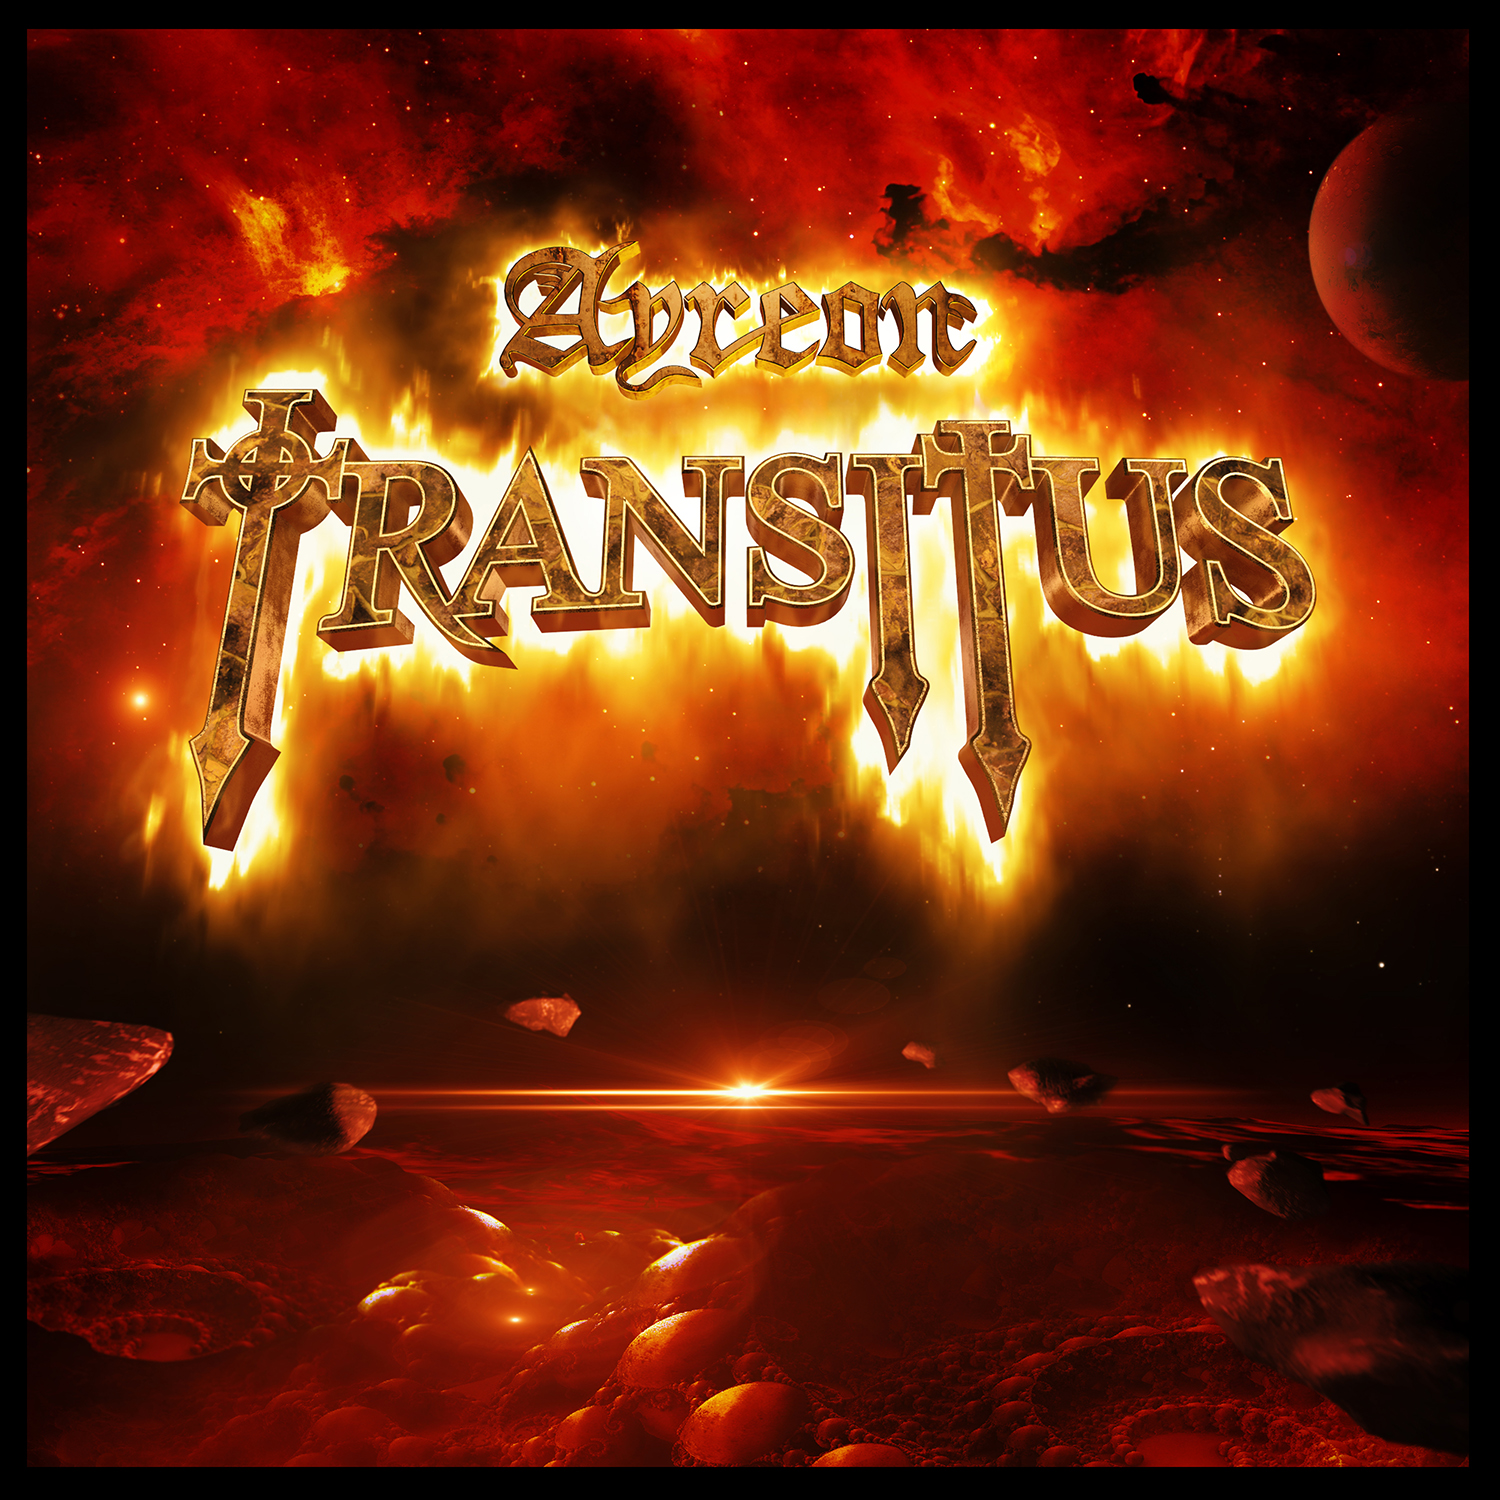 Transitus - Ayreon